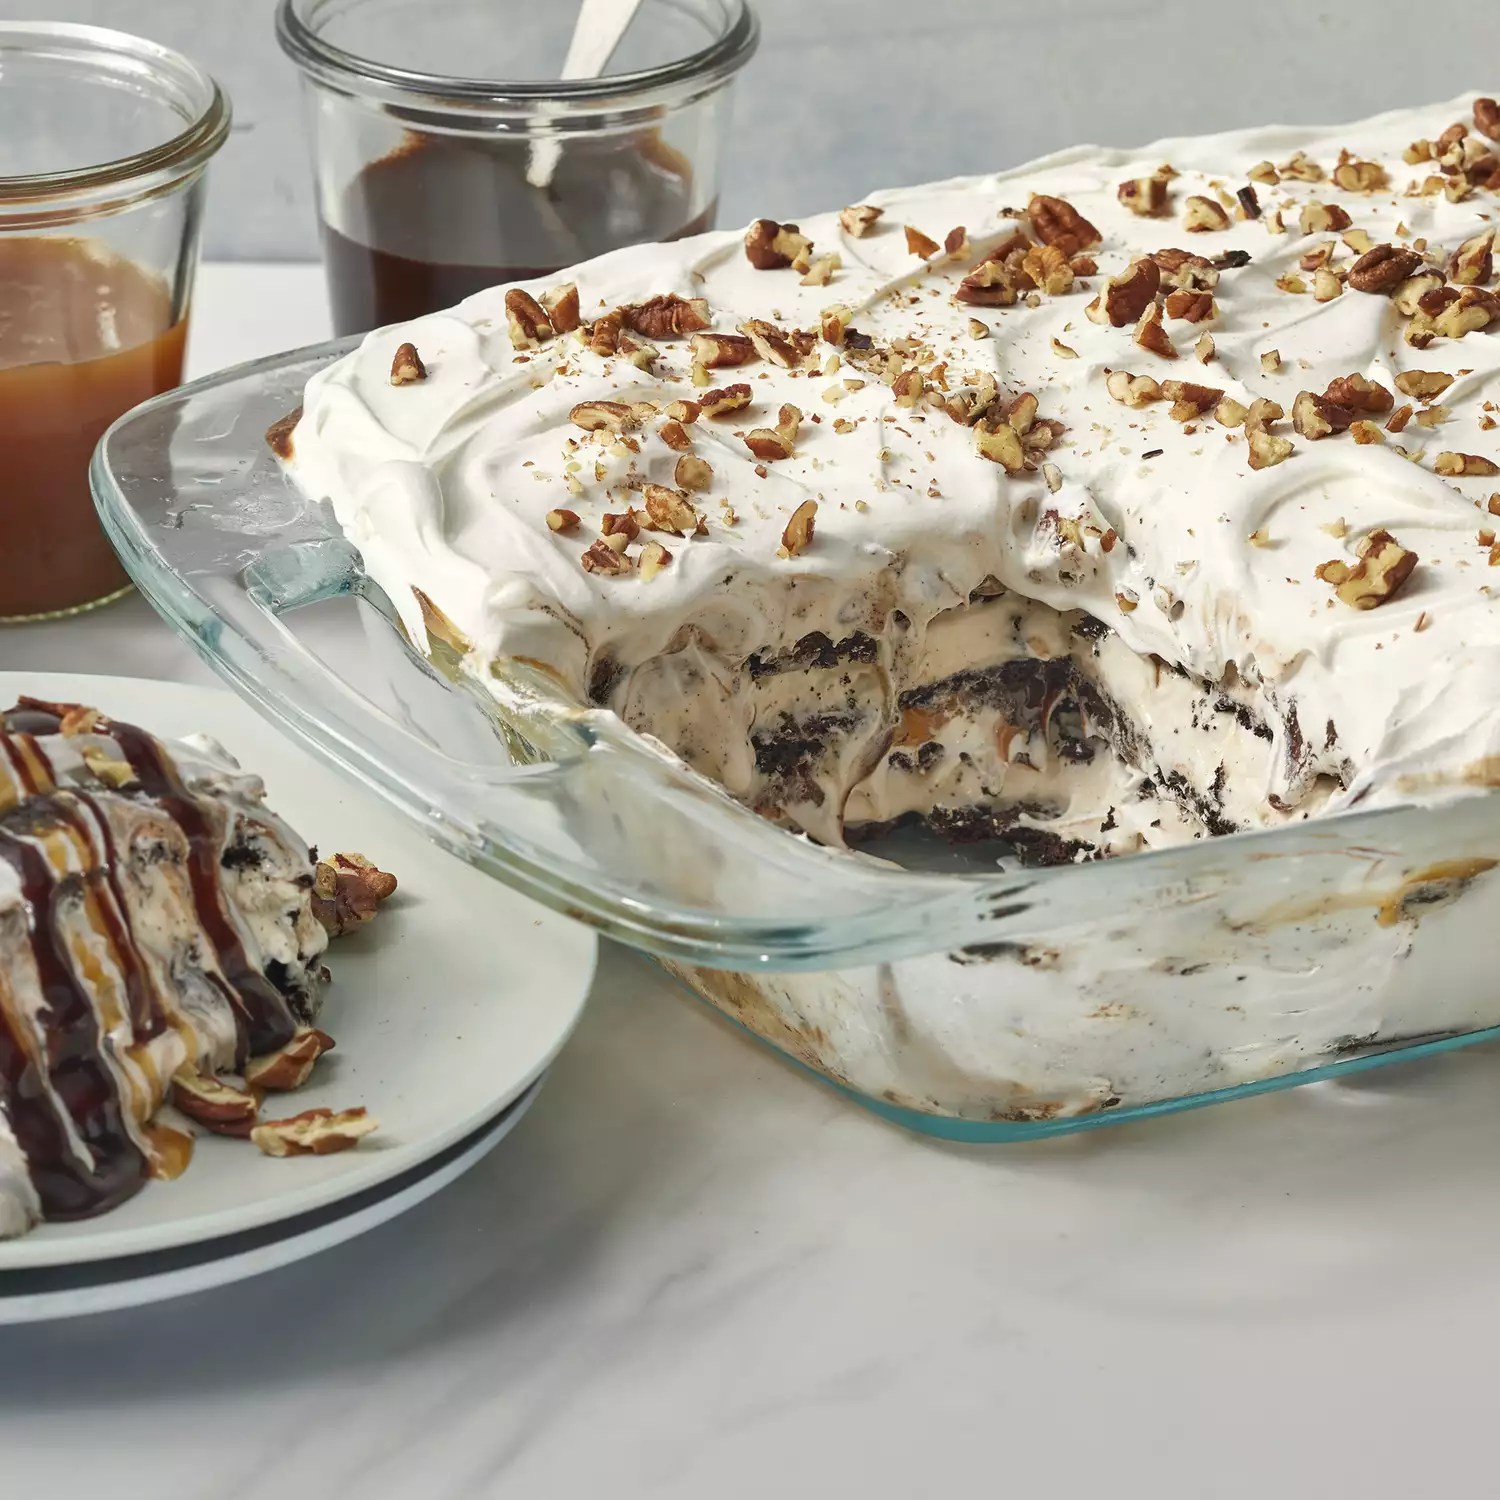 Unbelievably Delicious Ice Cream Cake Recipe!